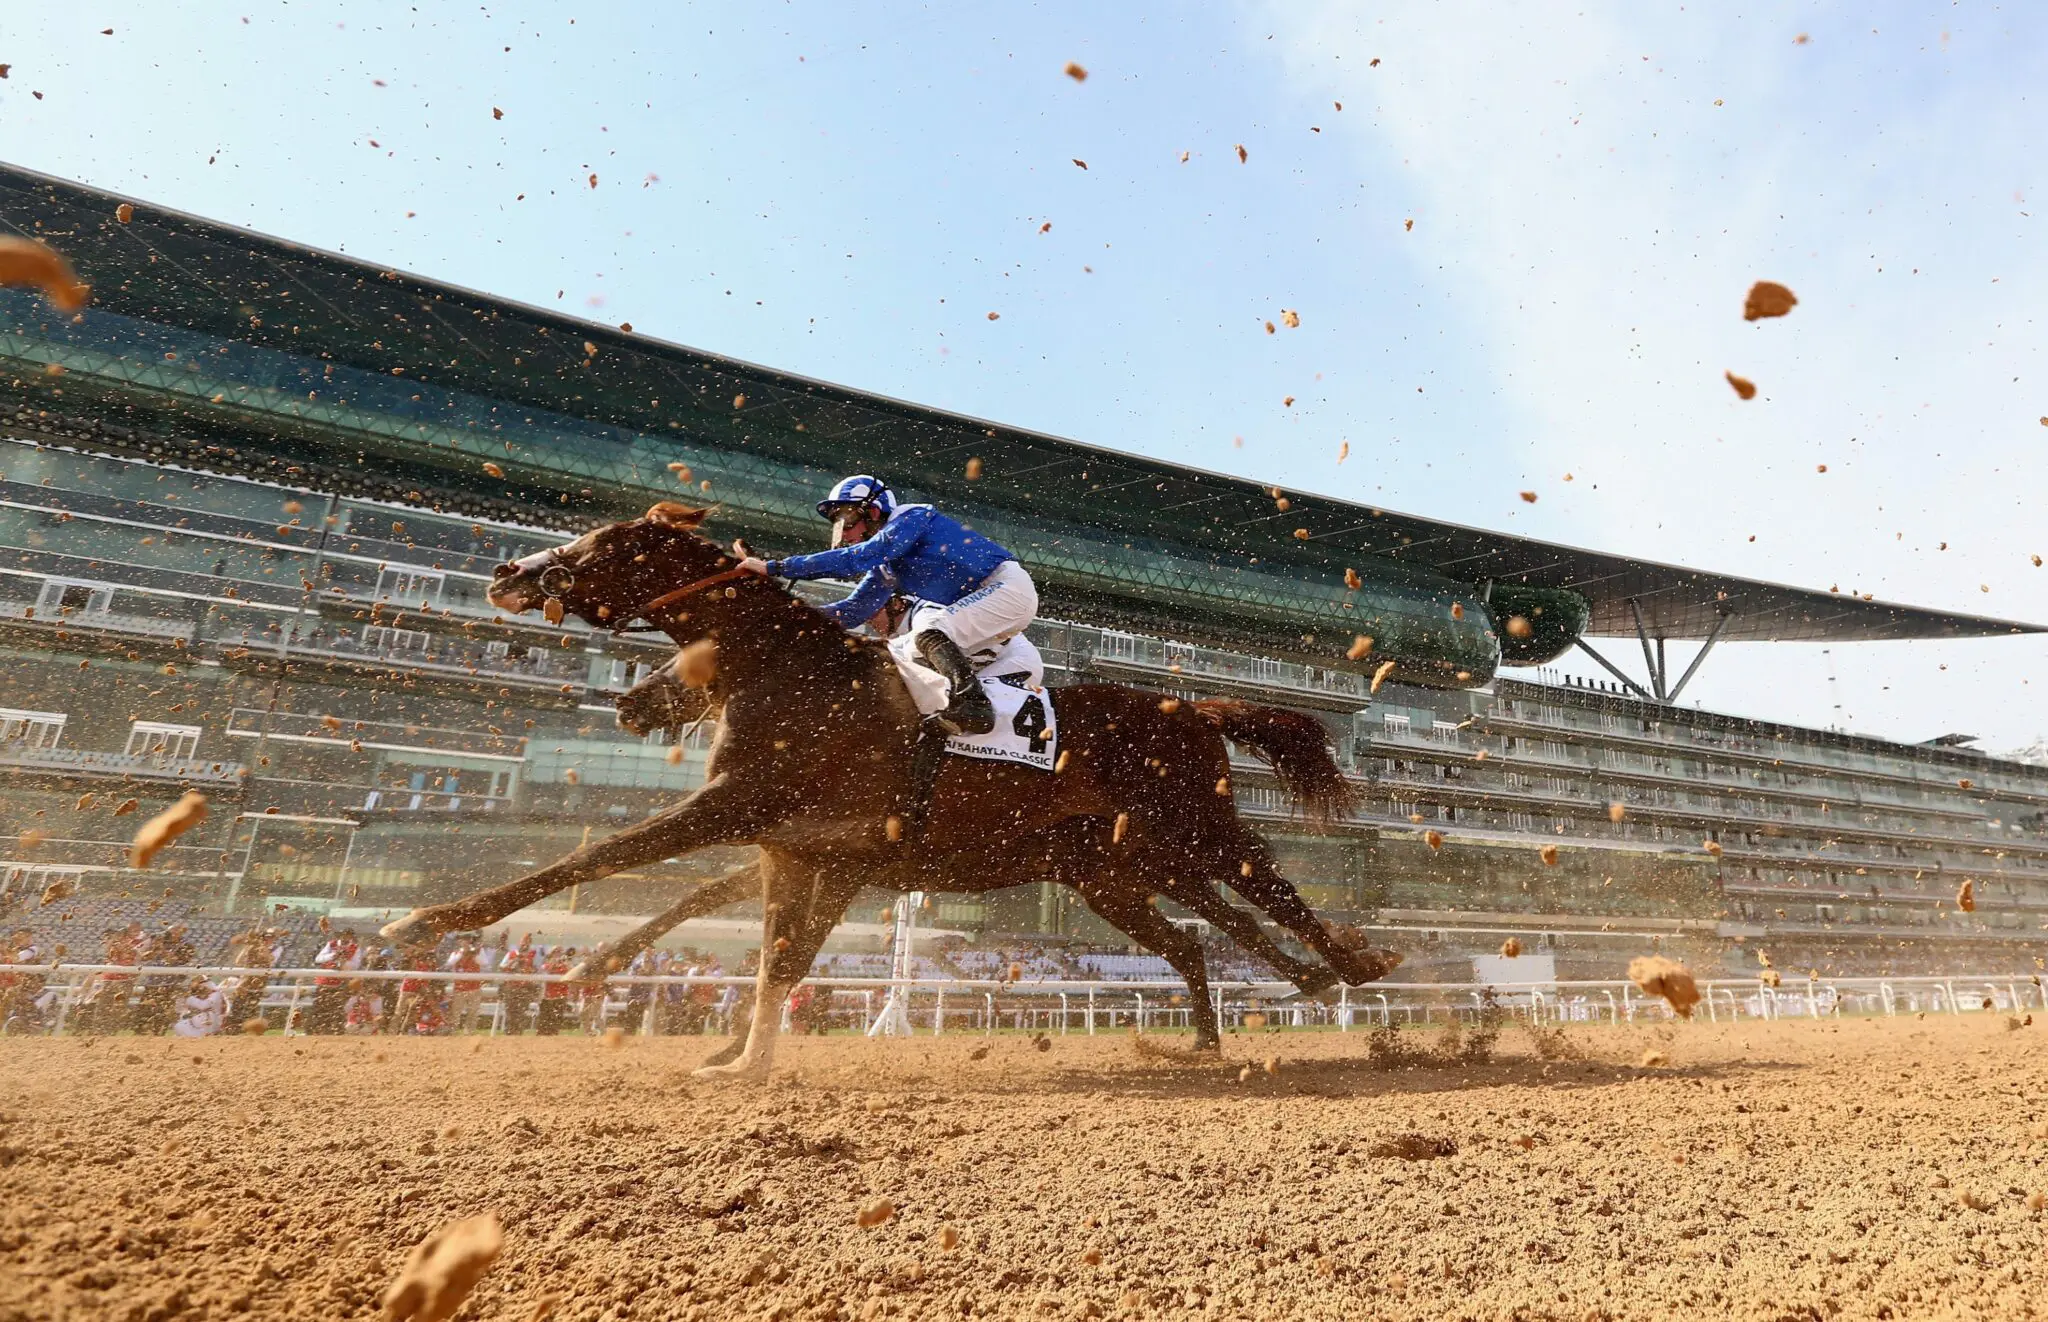 Horse racing on the Dubai race track